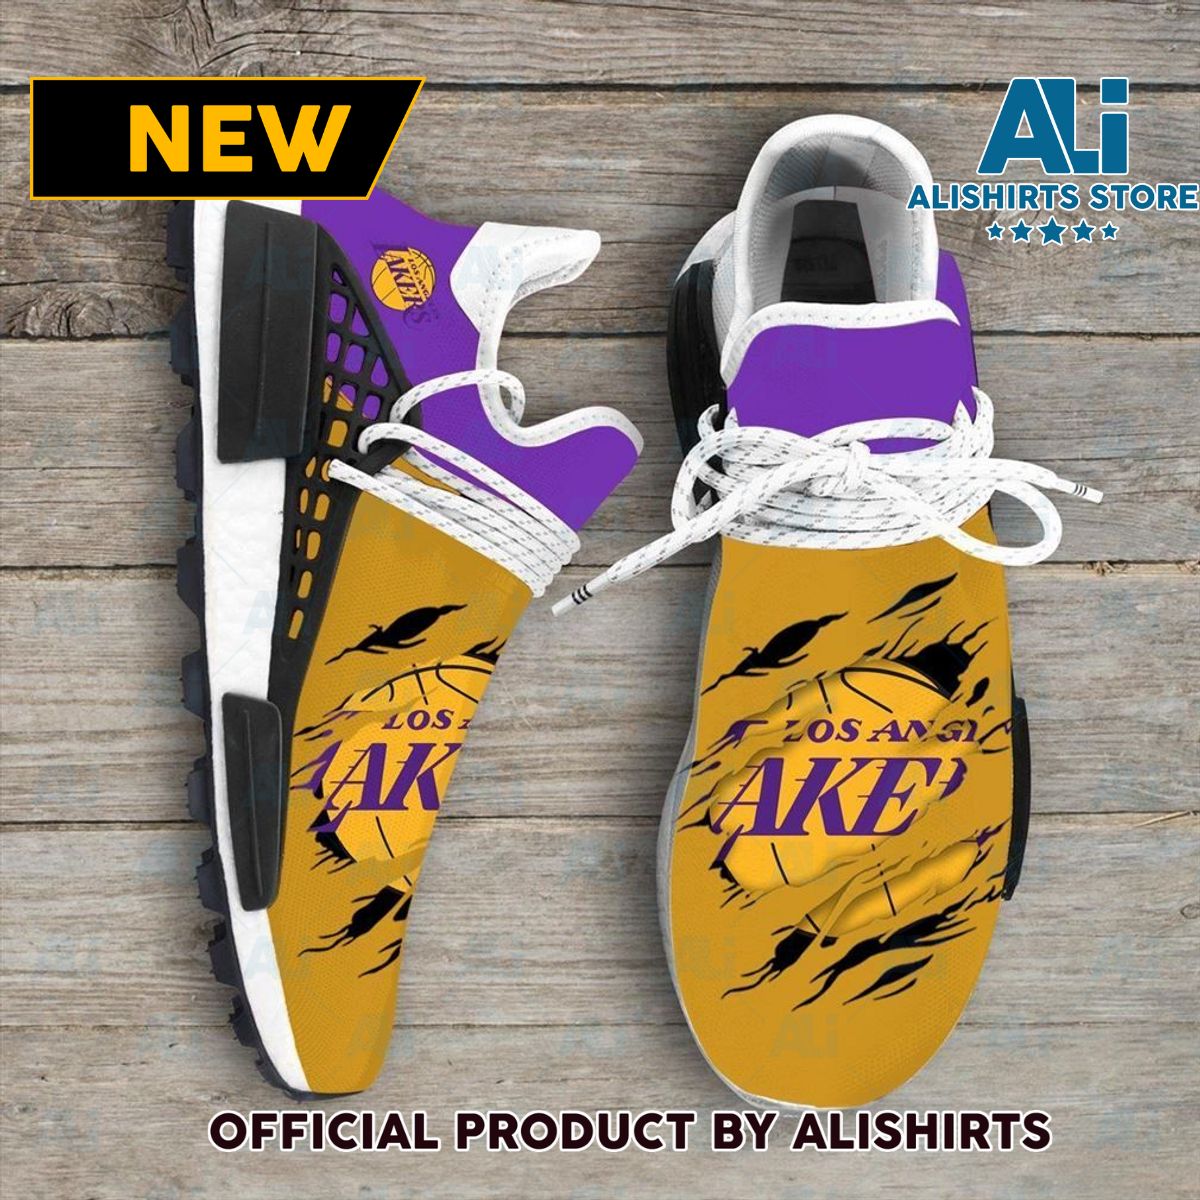 Los Angeles Lakers NBA Sport Teams NMD Human Race Adidas NMD Sneakers